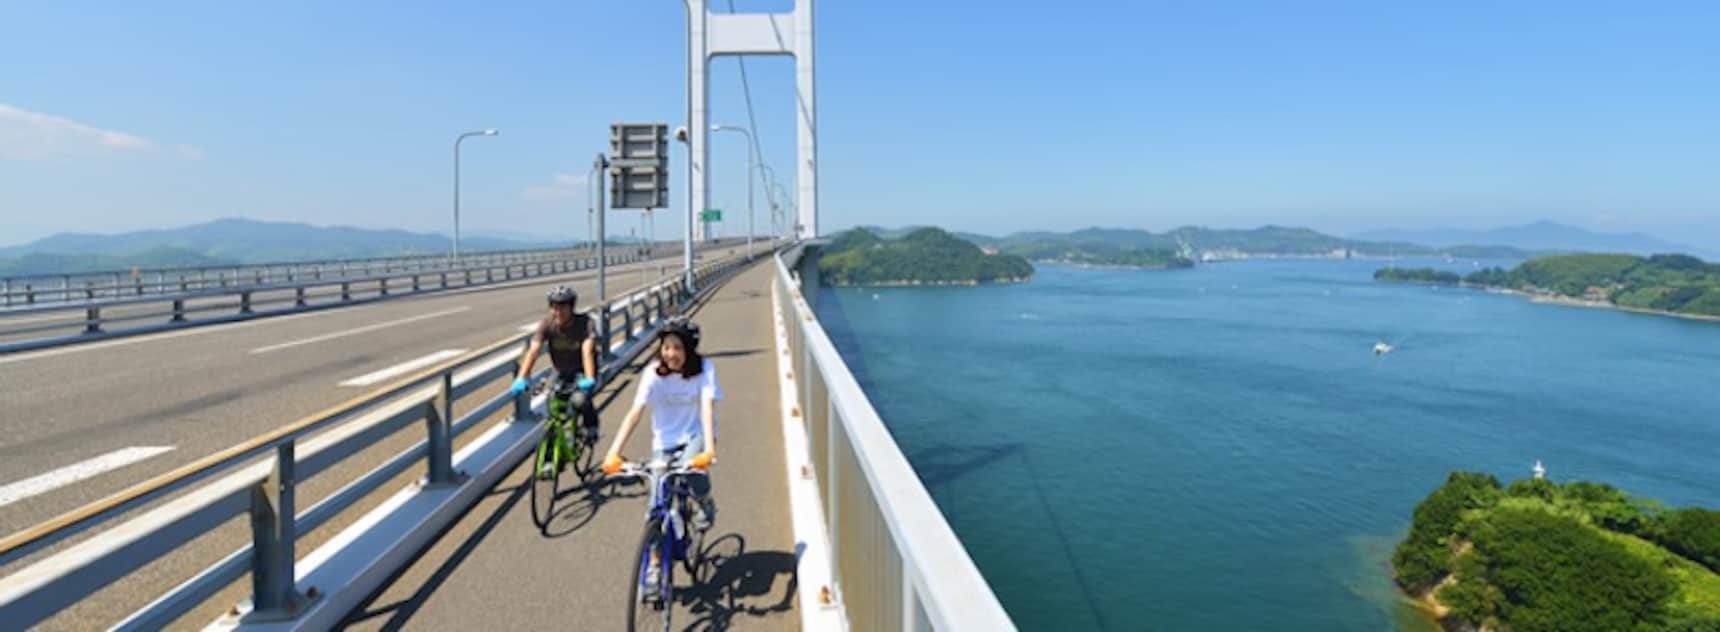 3 เส้นทางปั่นจักรยานยอดฮิตในญี่ปุ่น